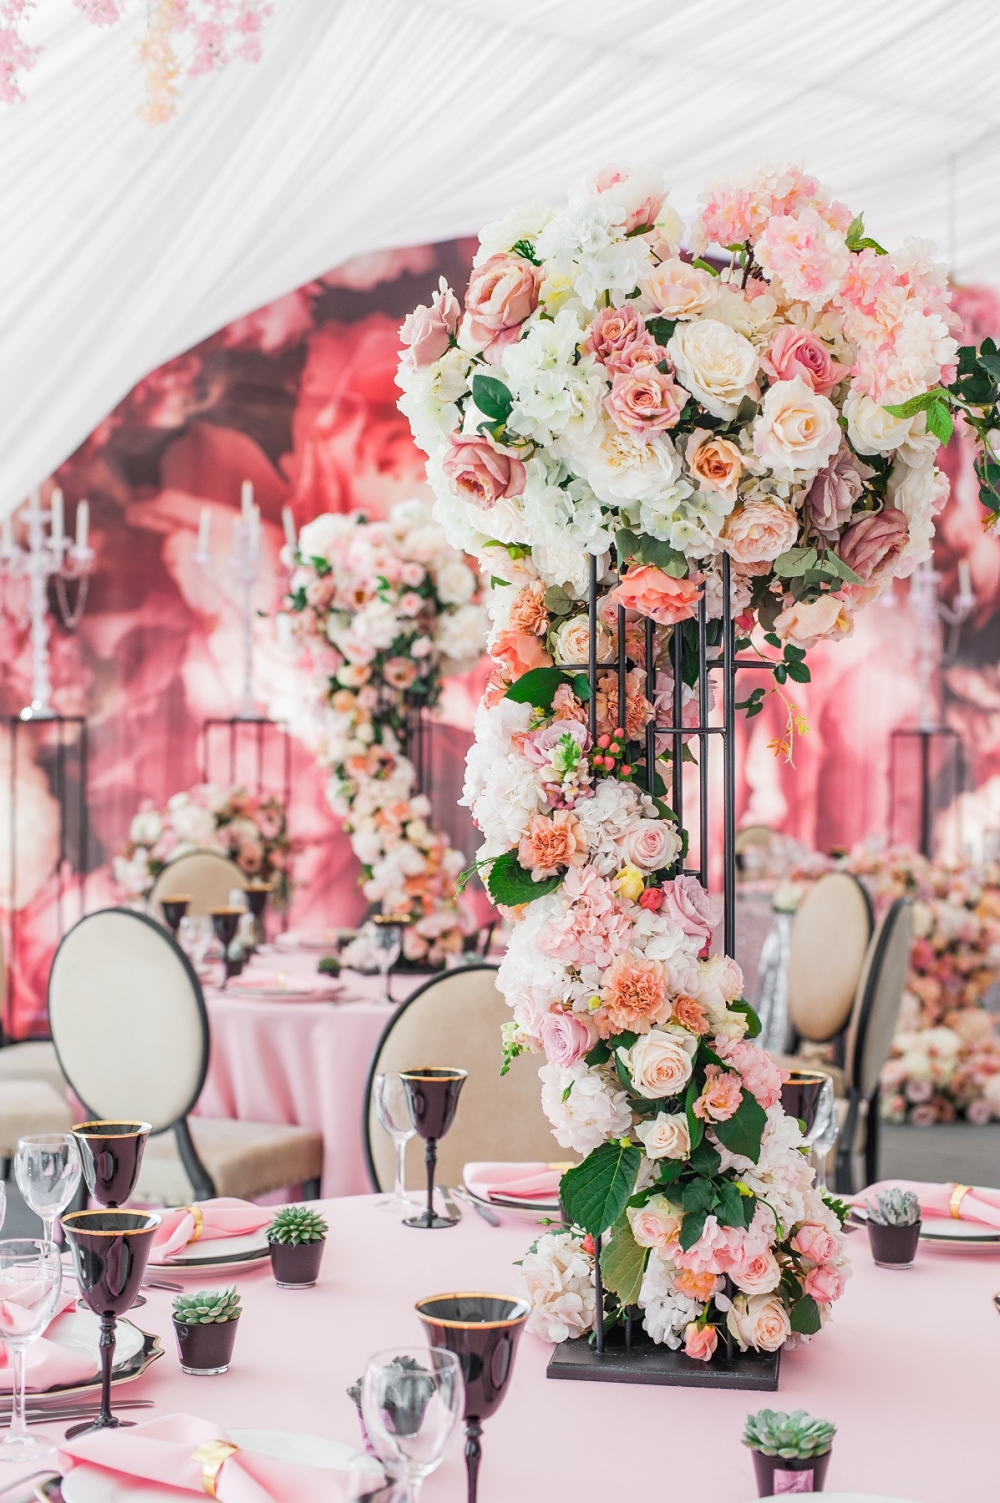 Свадьба ассоциировалась с настоящей свадьбой принцессы. Нежные оттенки розового, струящиеся ткани из натуральных тканей. И все это мы органично разбавили черными элементами декора.